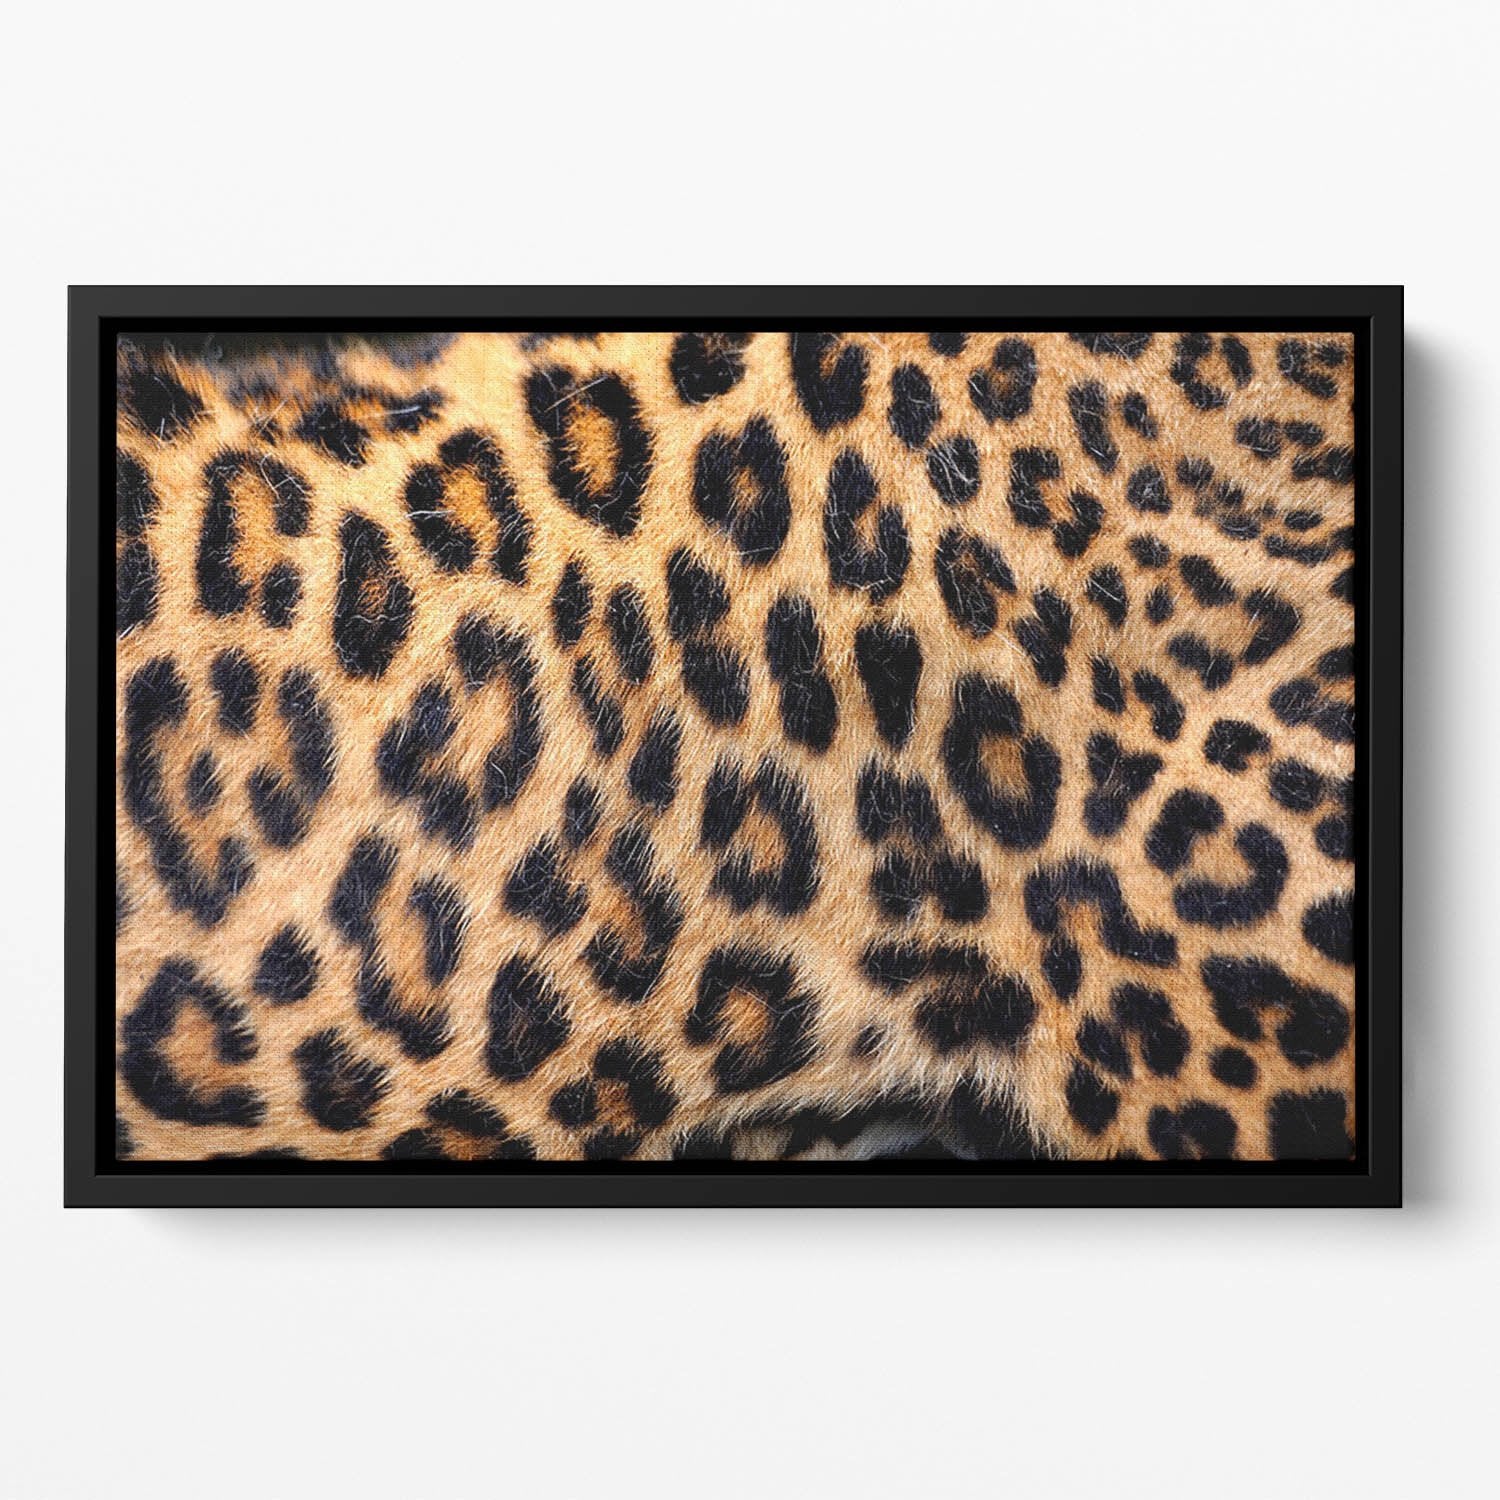 Leopard skin texture Floating Framed Canvas